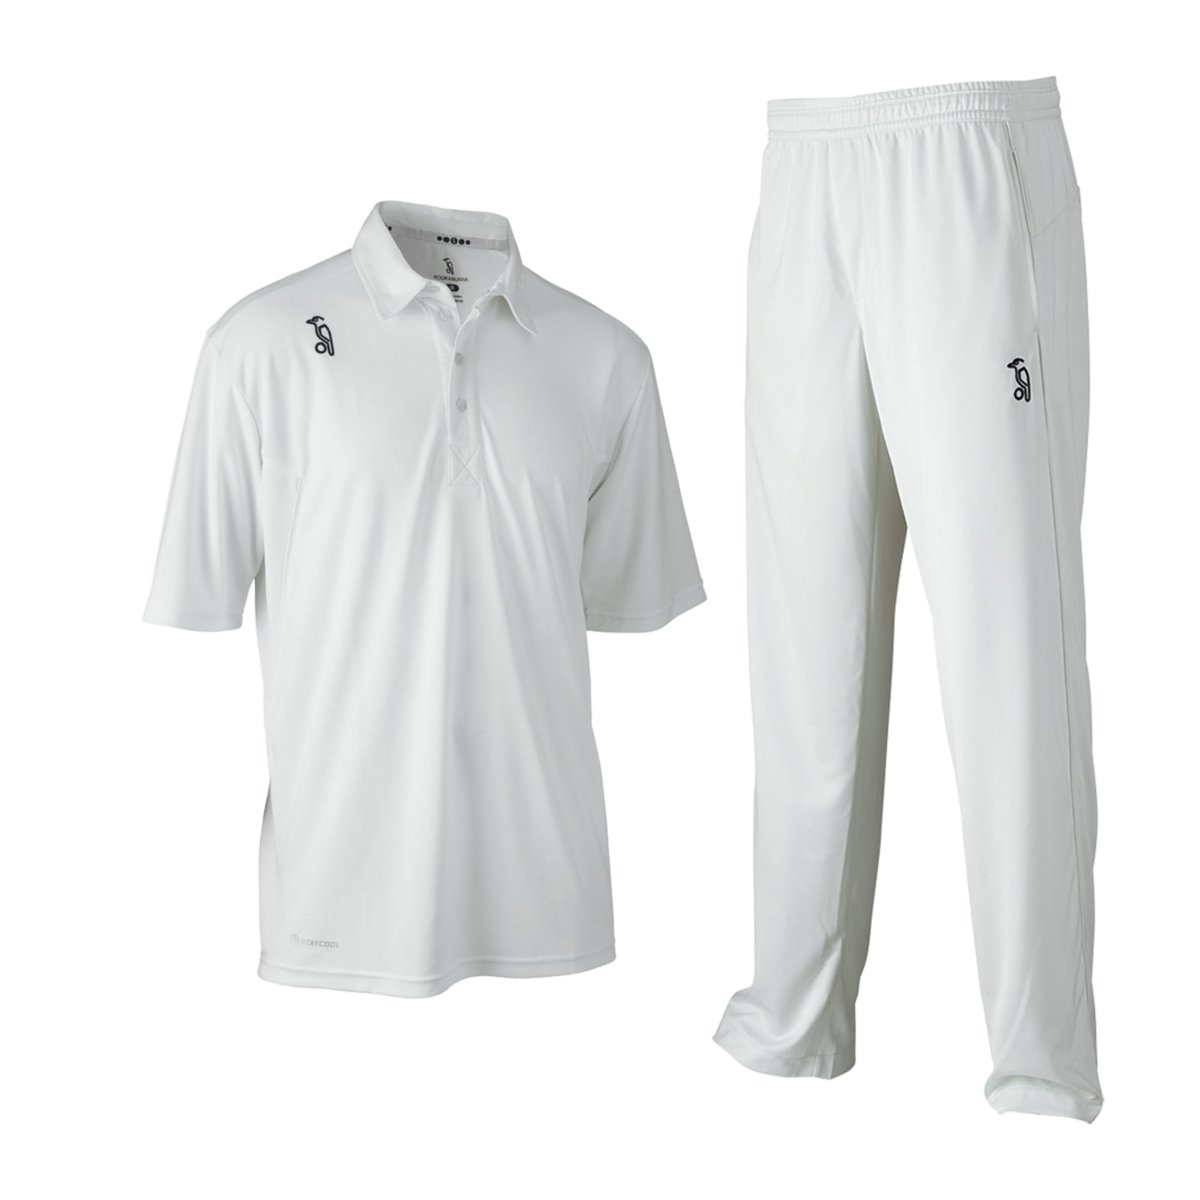 Cricket clothing